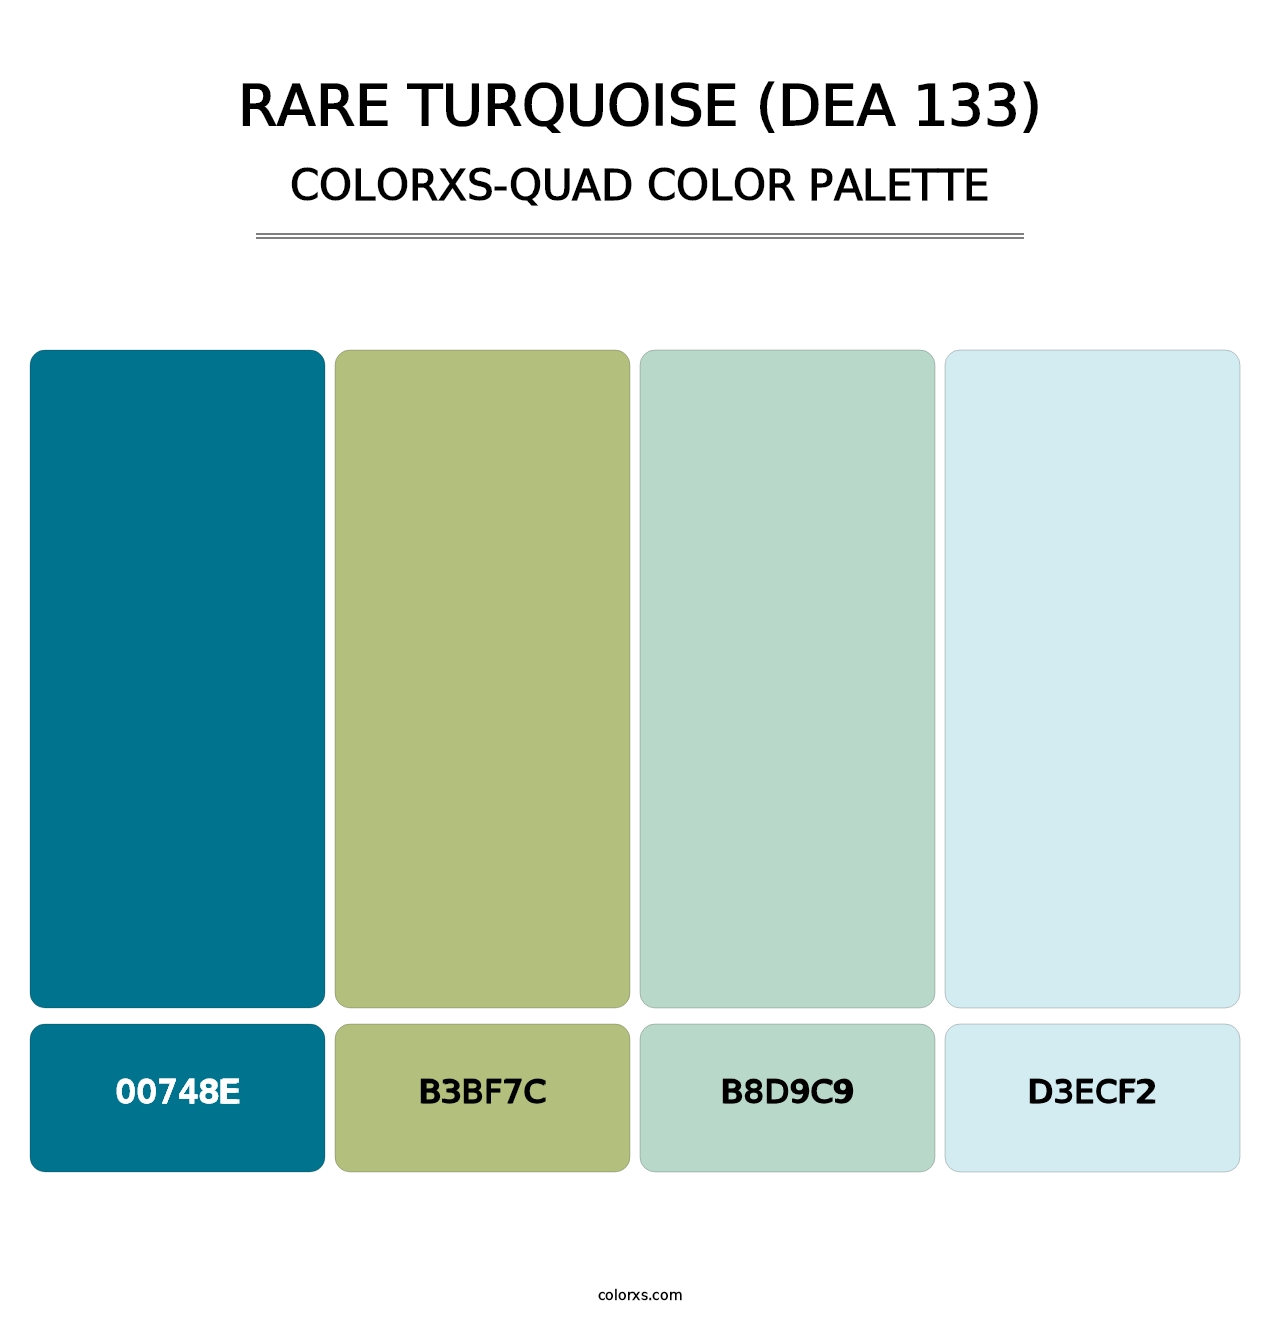 Rare Turquoise (DEA 133) - Colorxs Quad Palette